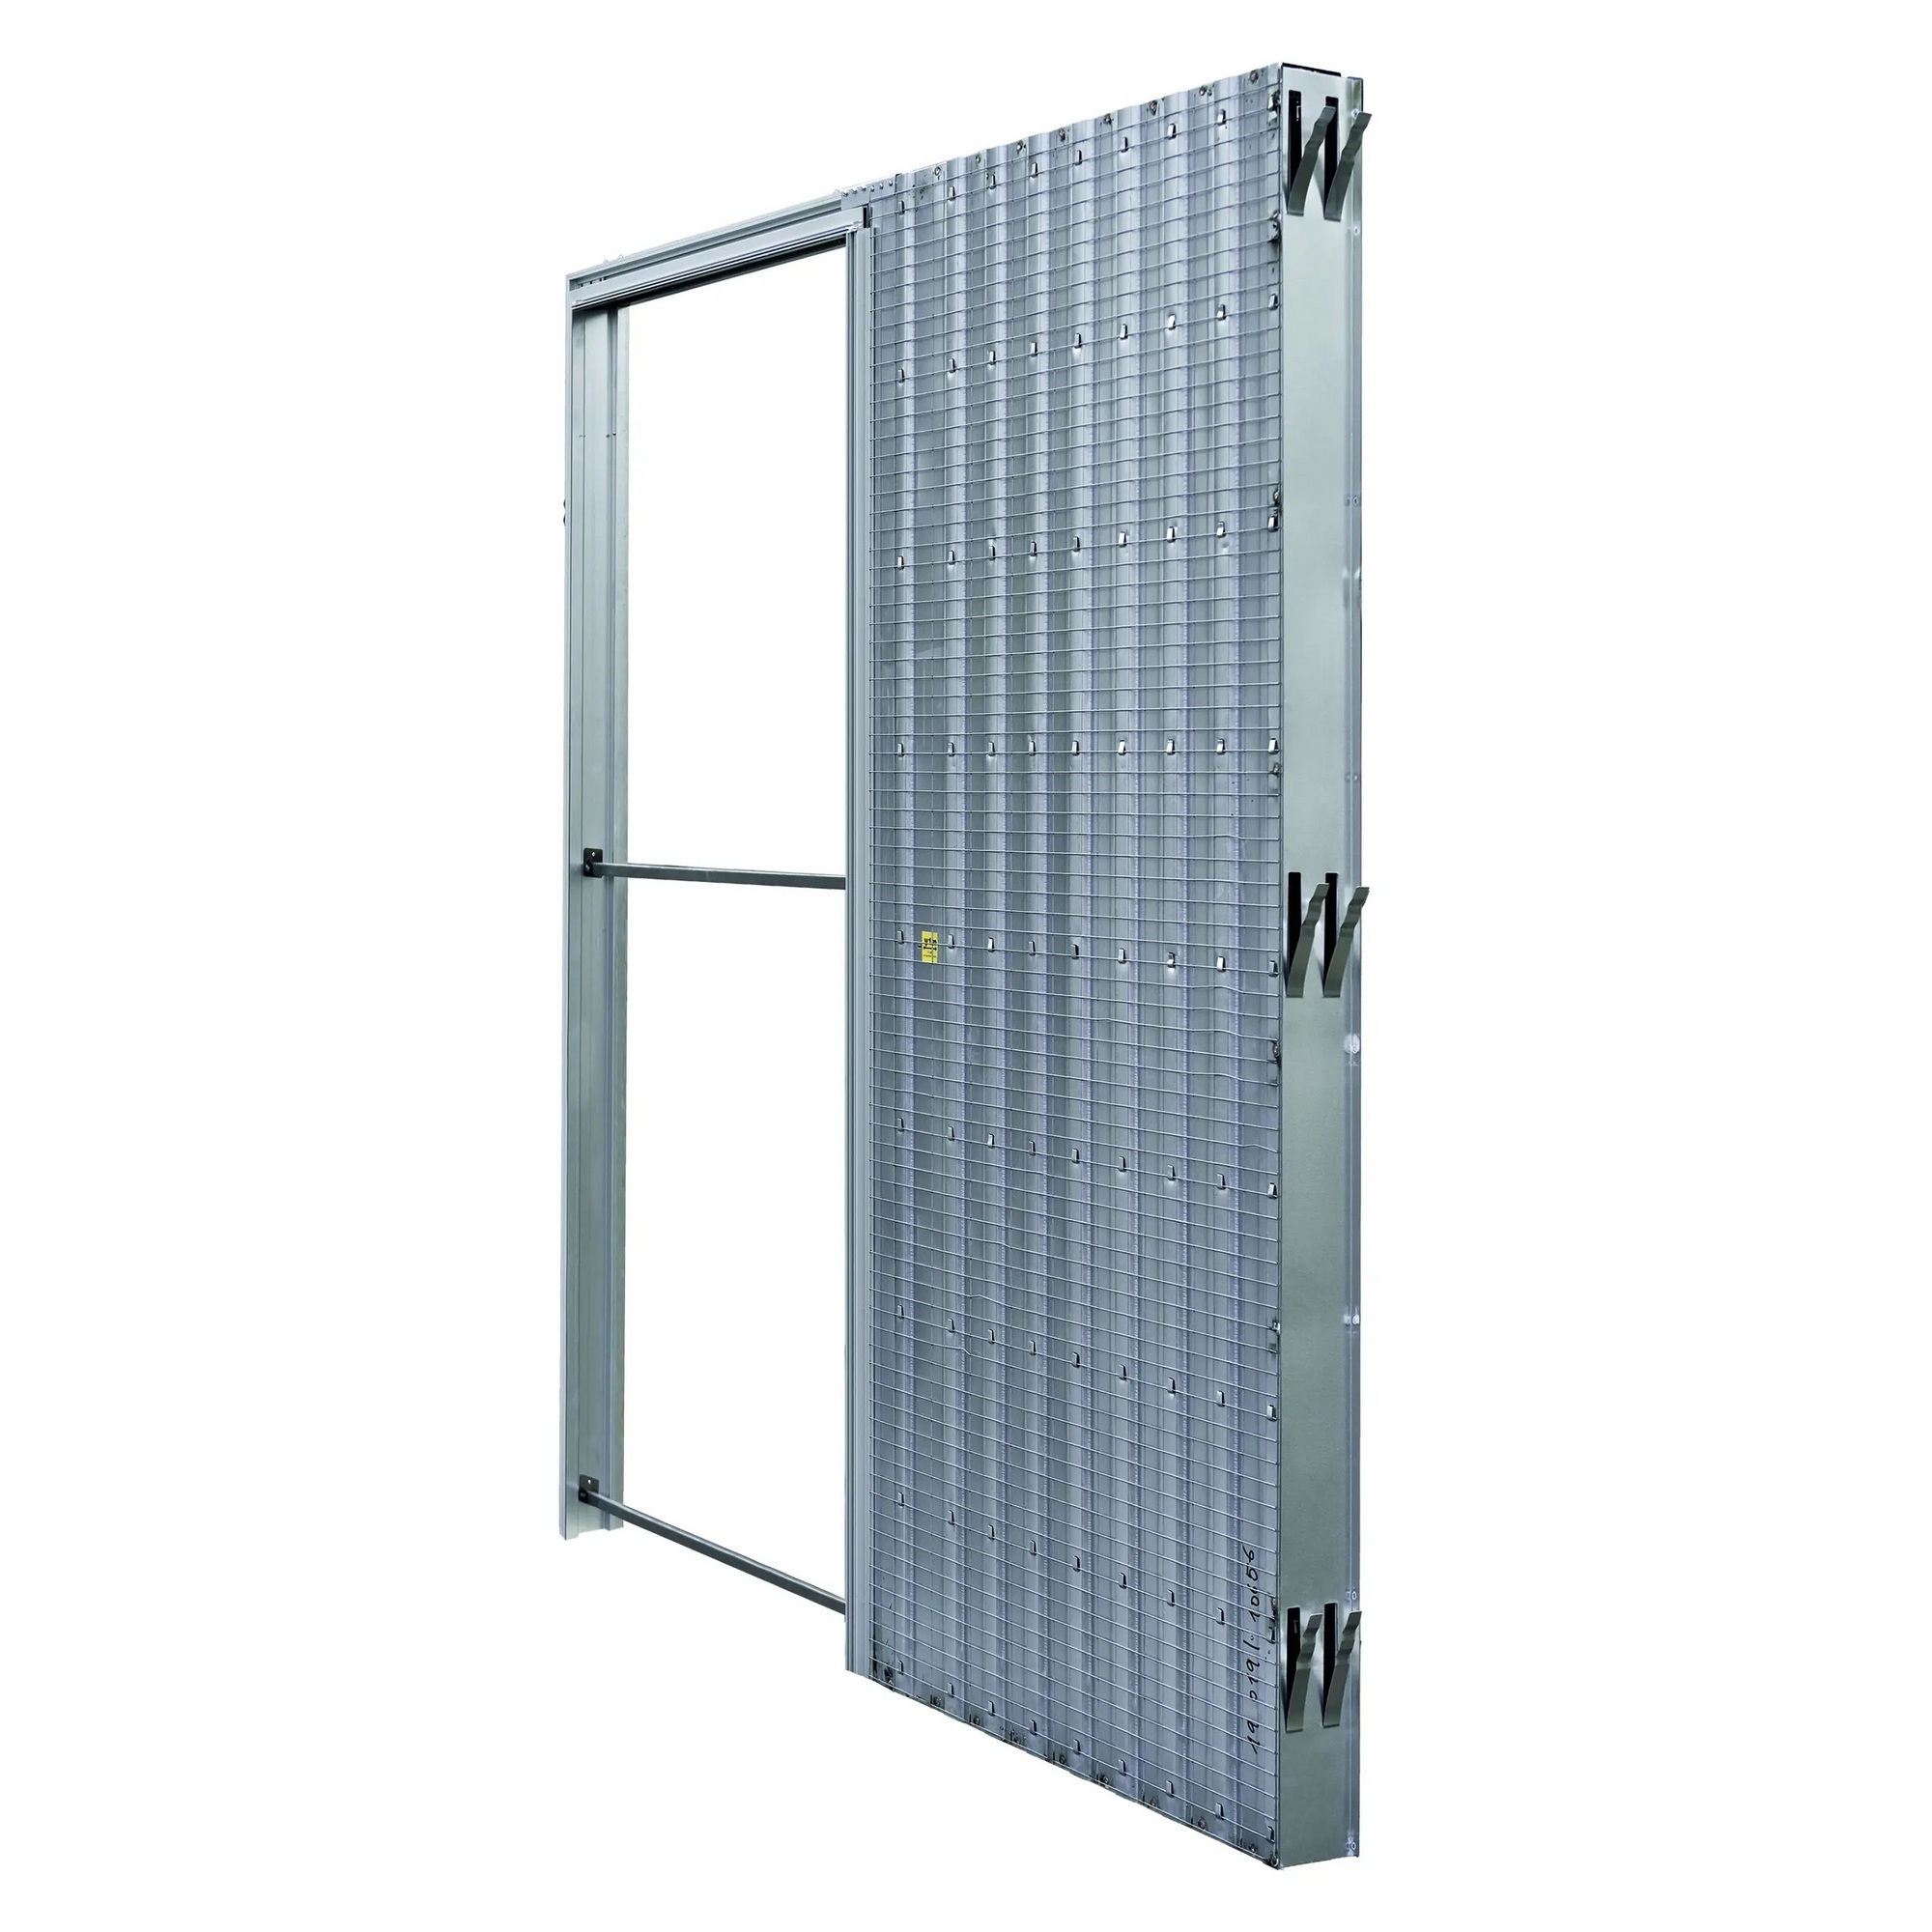 Pouzdro pro posuvné dveře JAP AKTIVE standard 700 mm do zdiva JAP